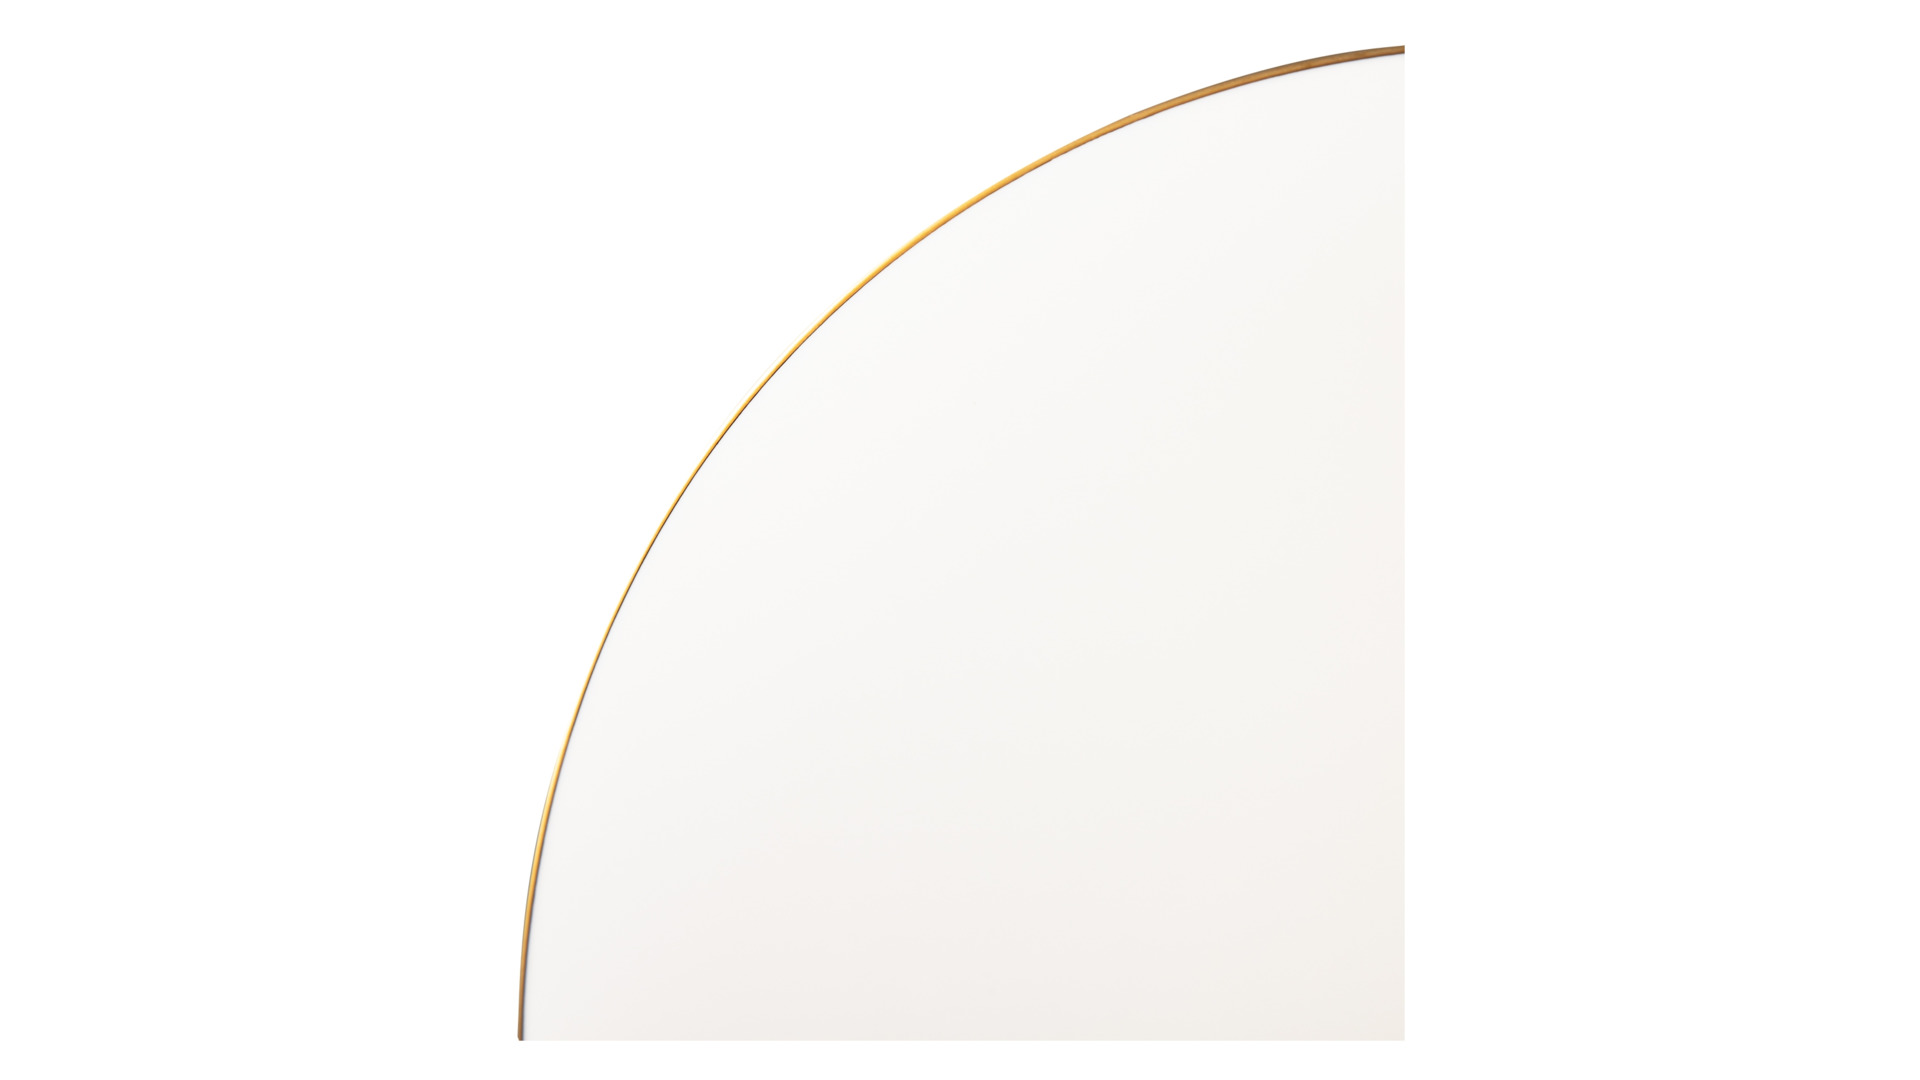 Тарелка обеденная Narumi Золотая линия 28 см, фарфор костяной